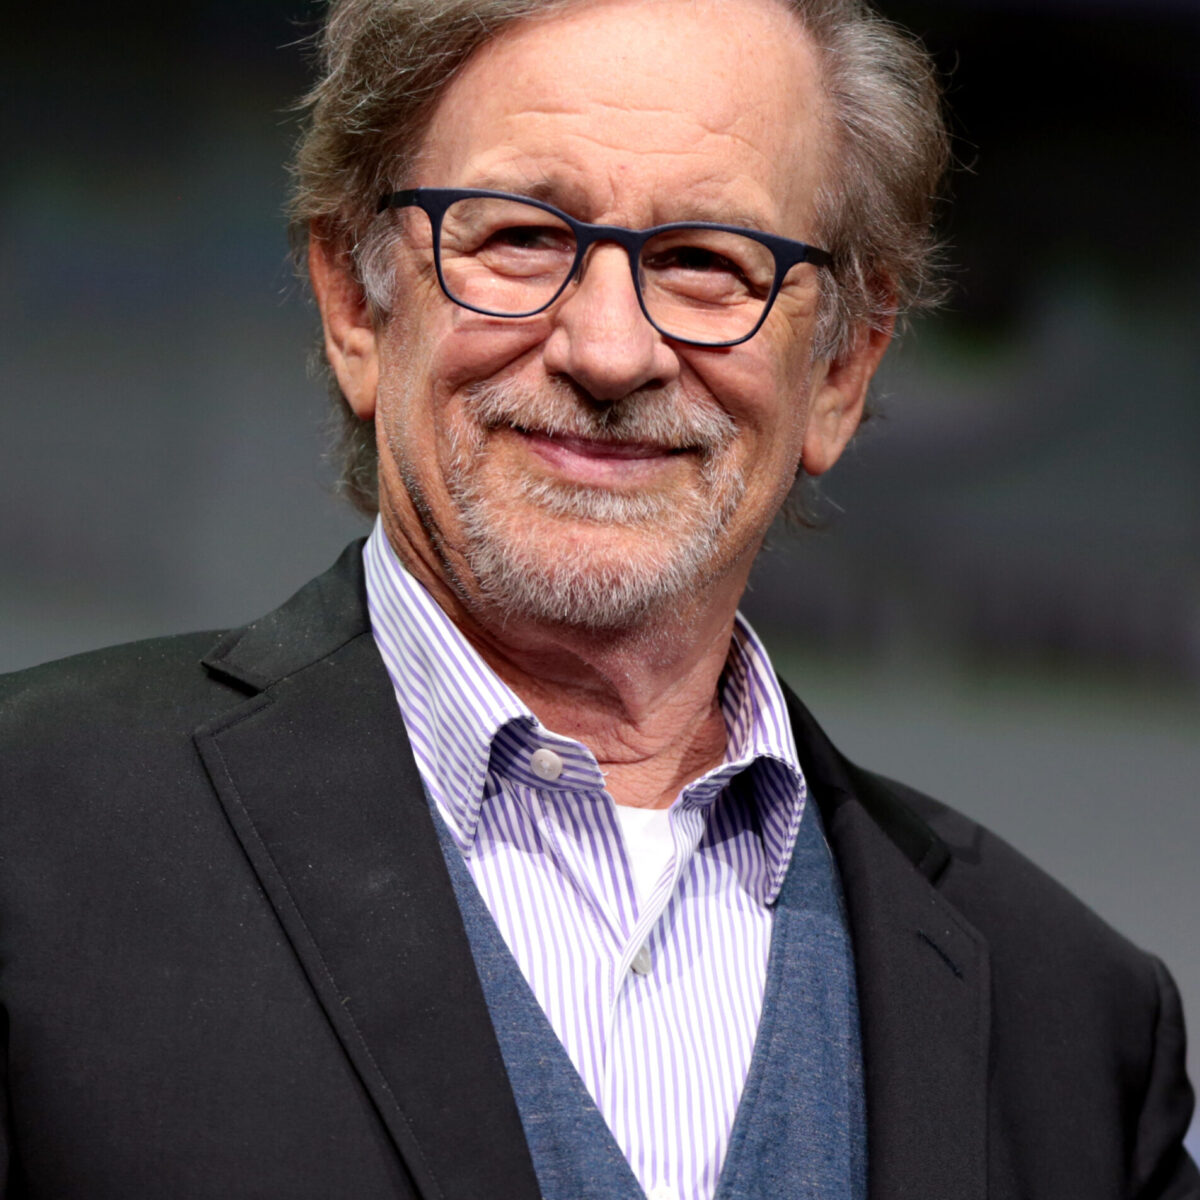 Steven_Spielberg_by_Gage_Skidmore